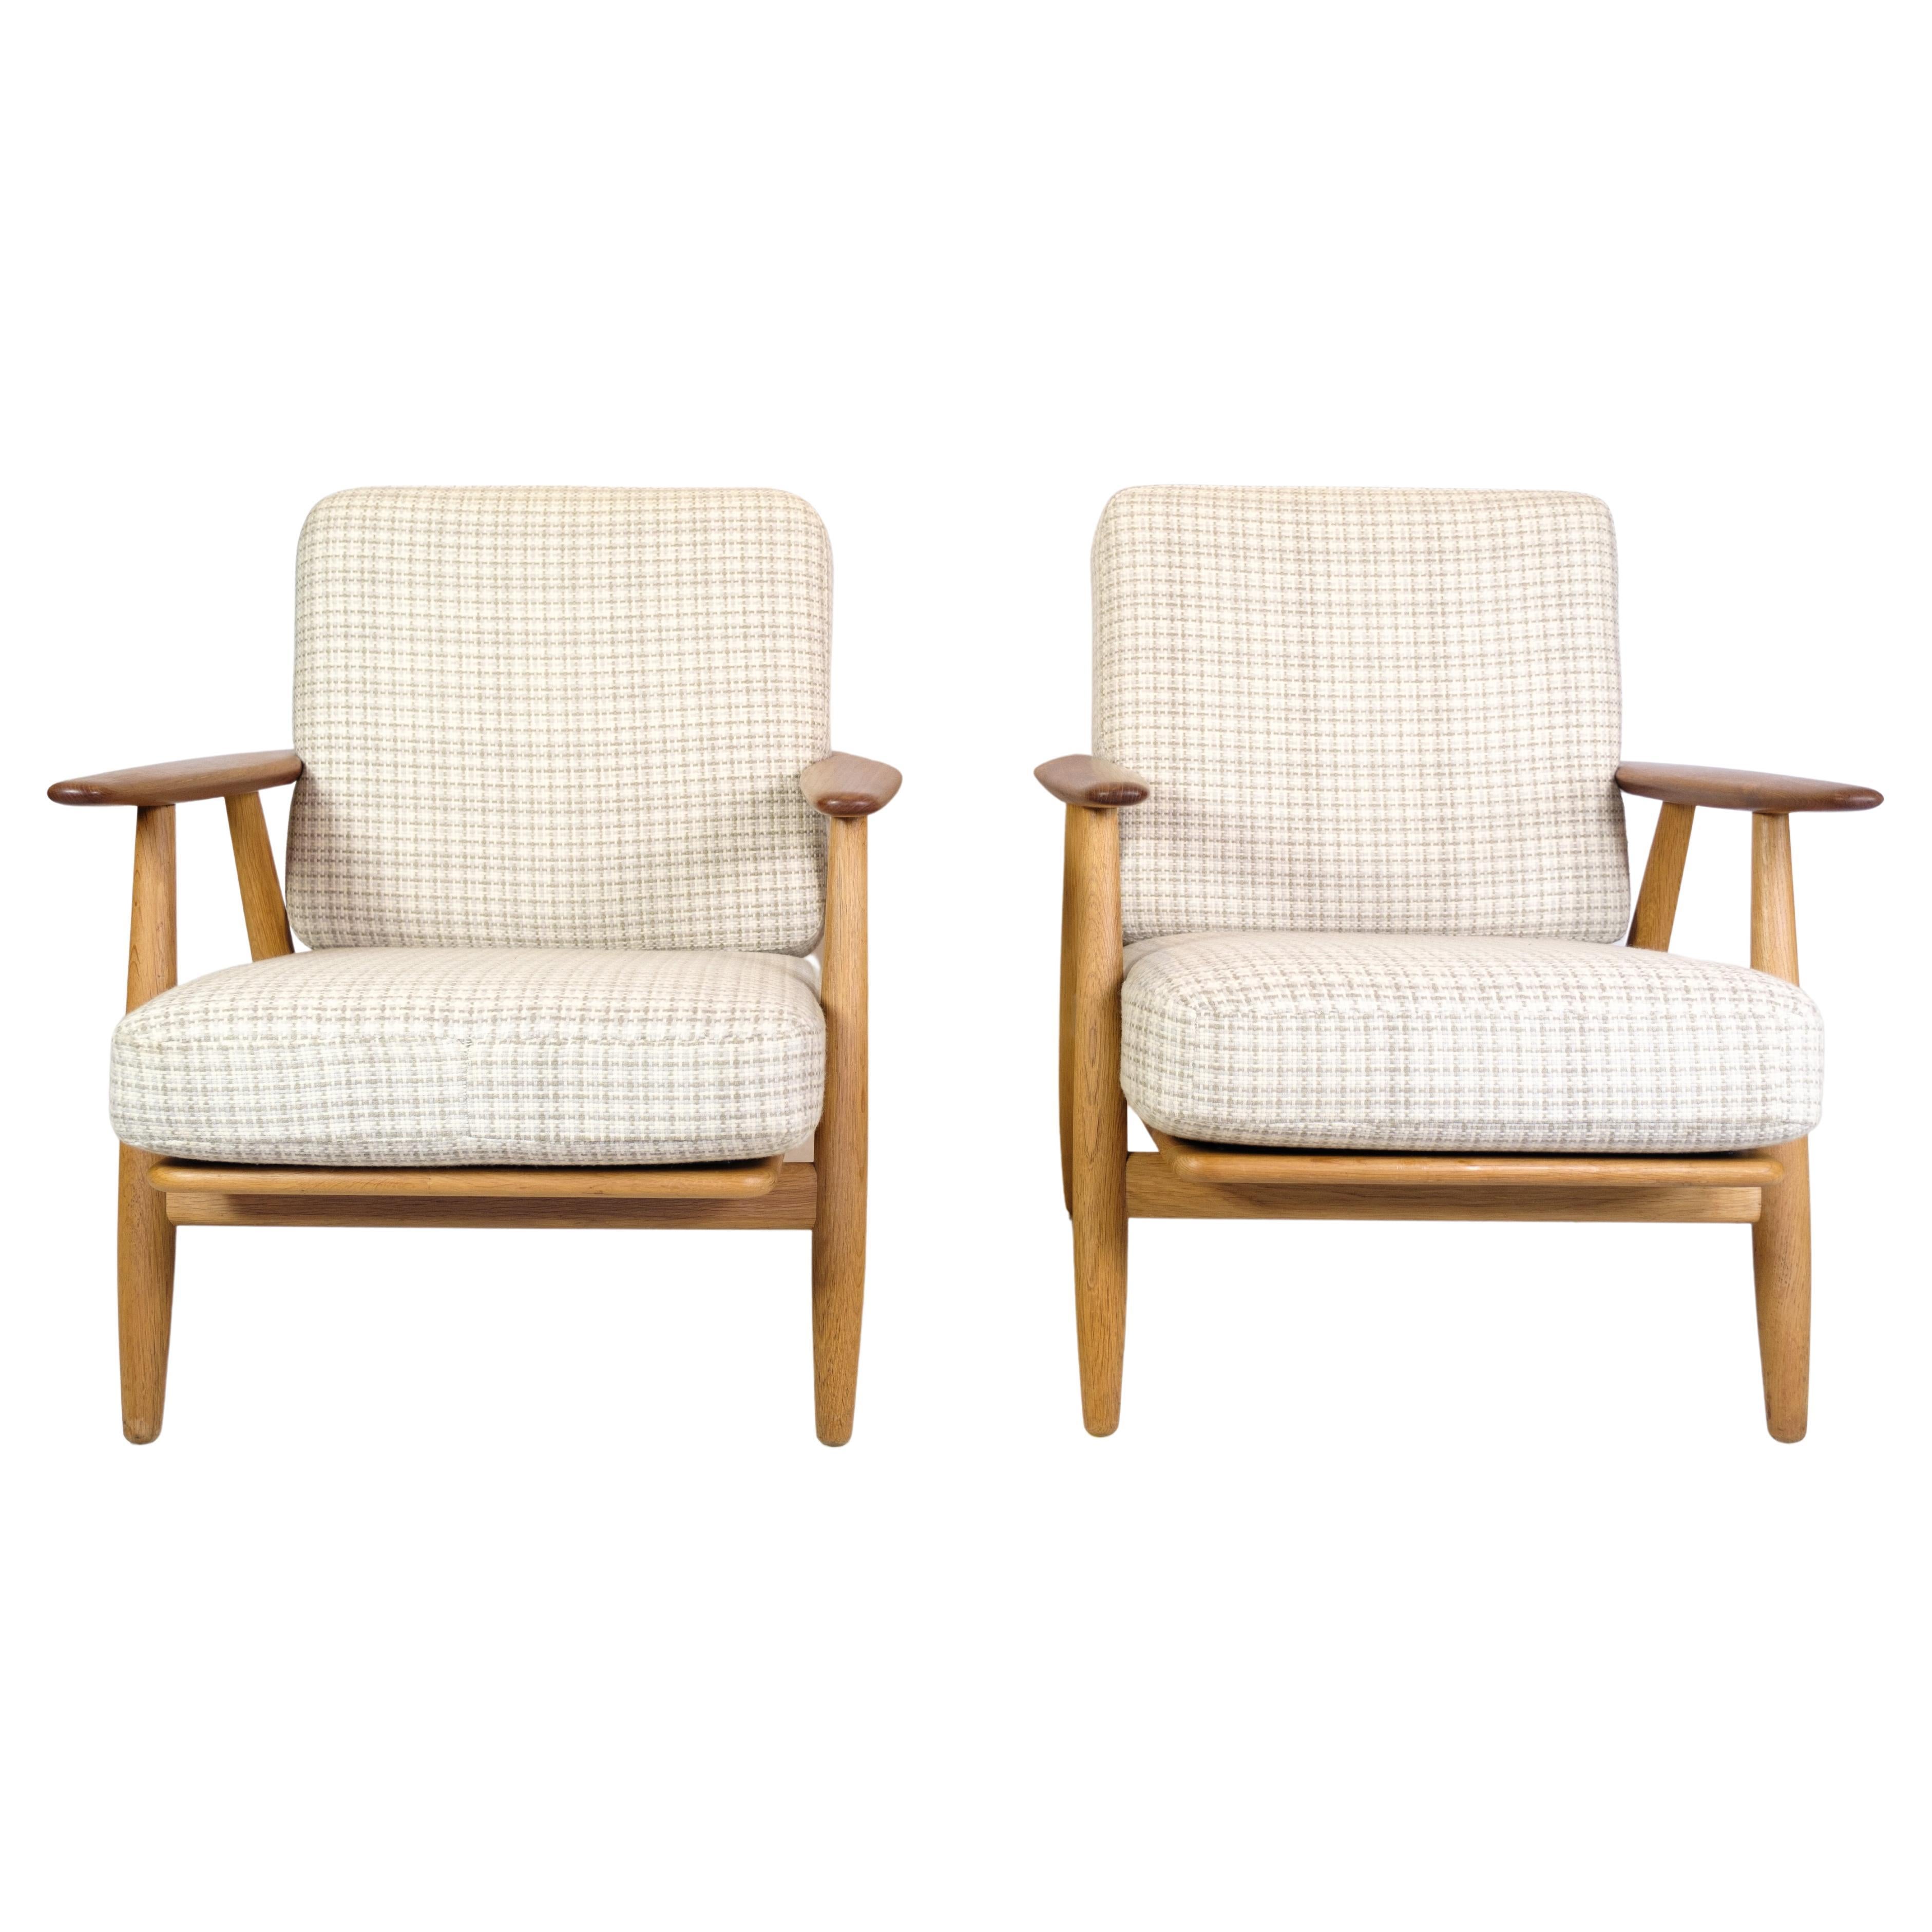 Pair of Original Teak and Oak Cigar Lounge Chairs by Hans J. Wegner for GETAMA